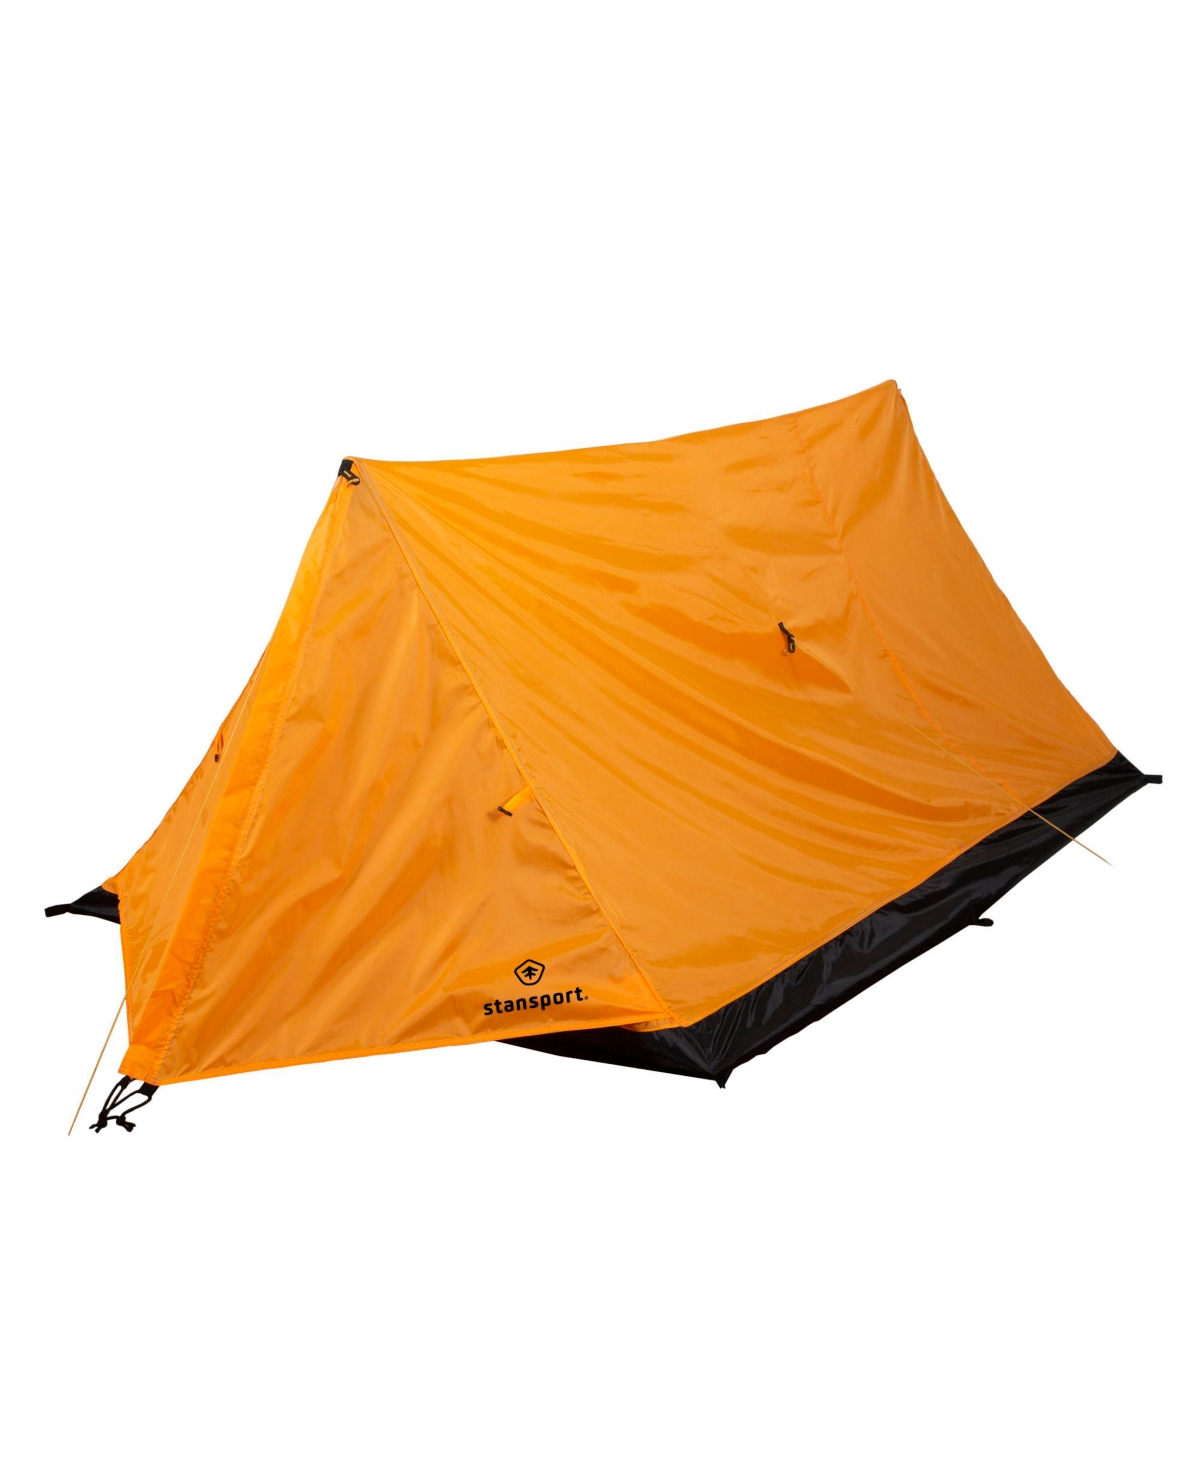 Stan sport Eagle Backpacking Tent - Orange - Orange